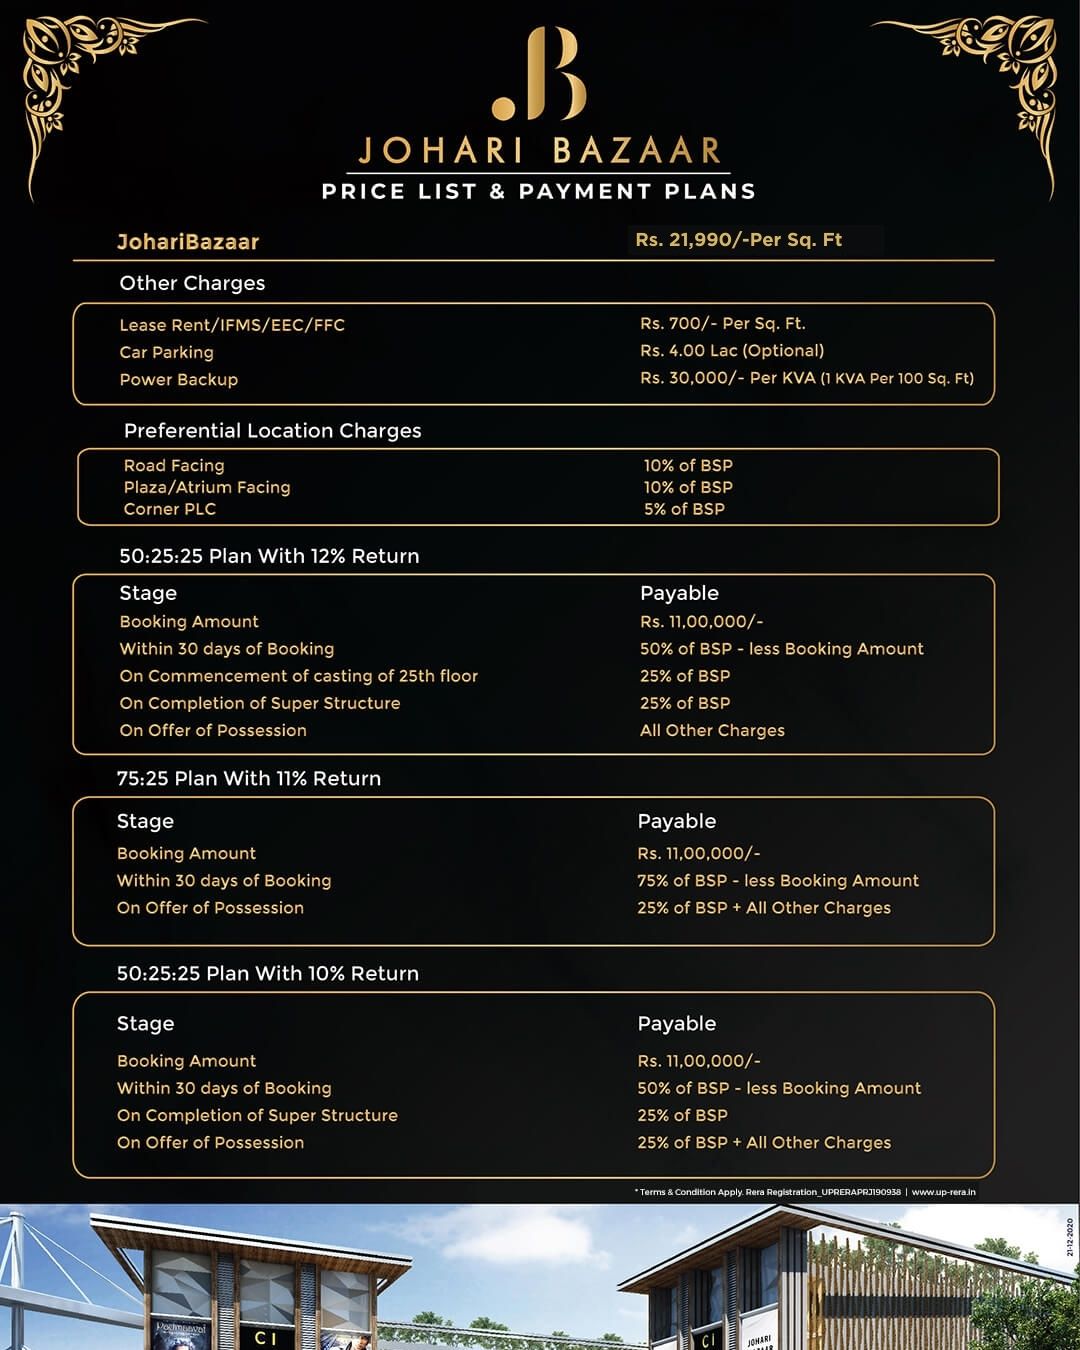 Johari Bazaar pricelist